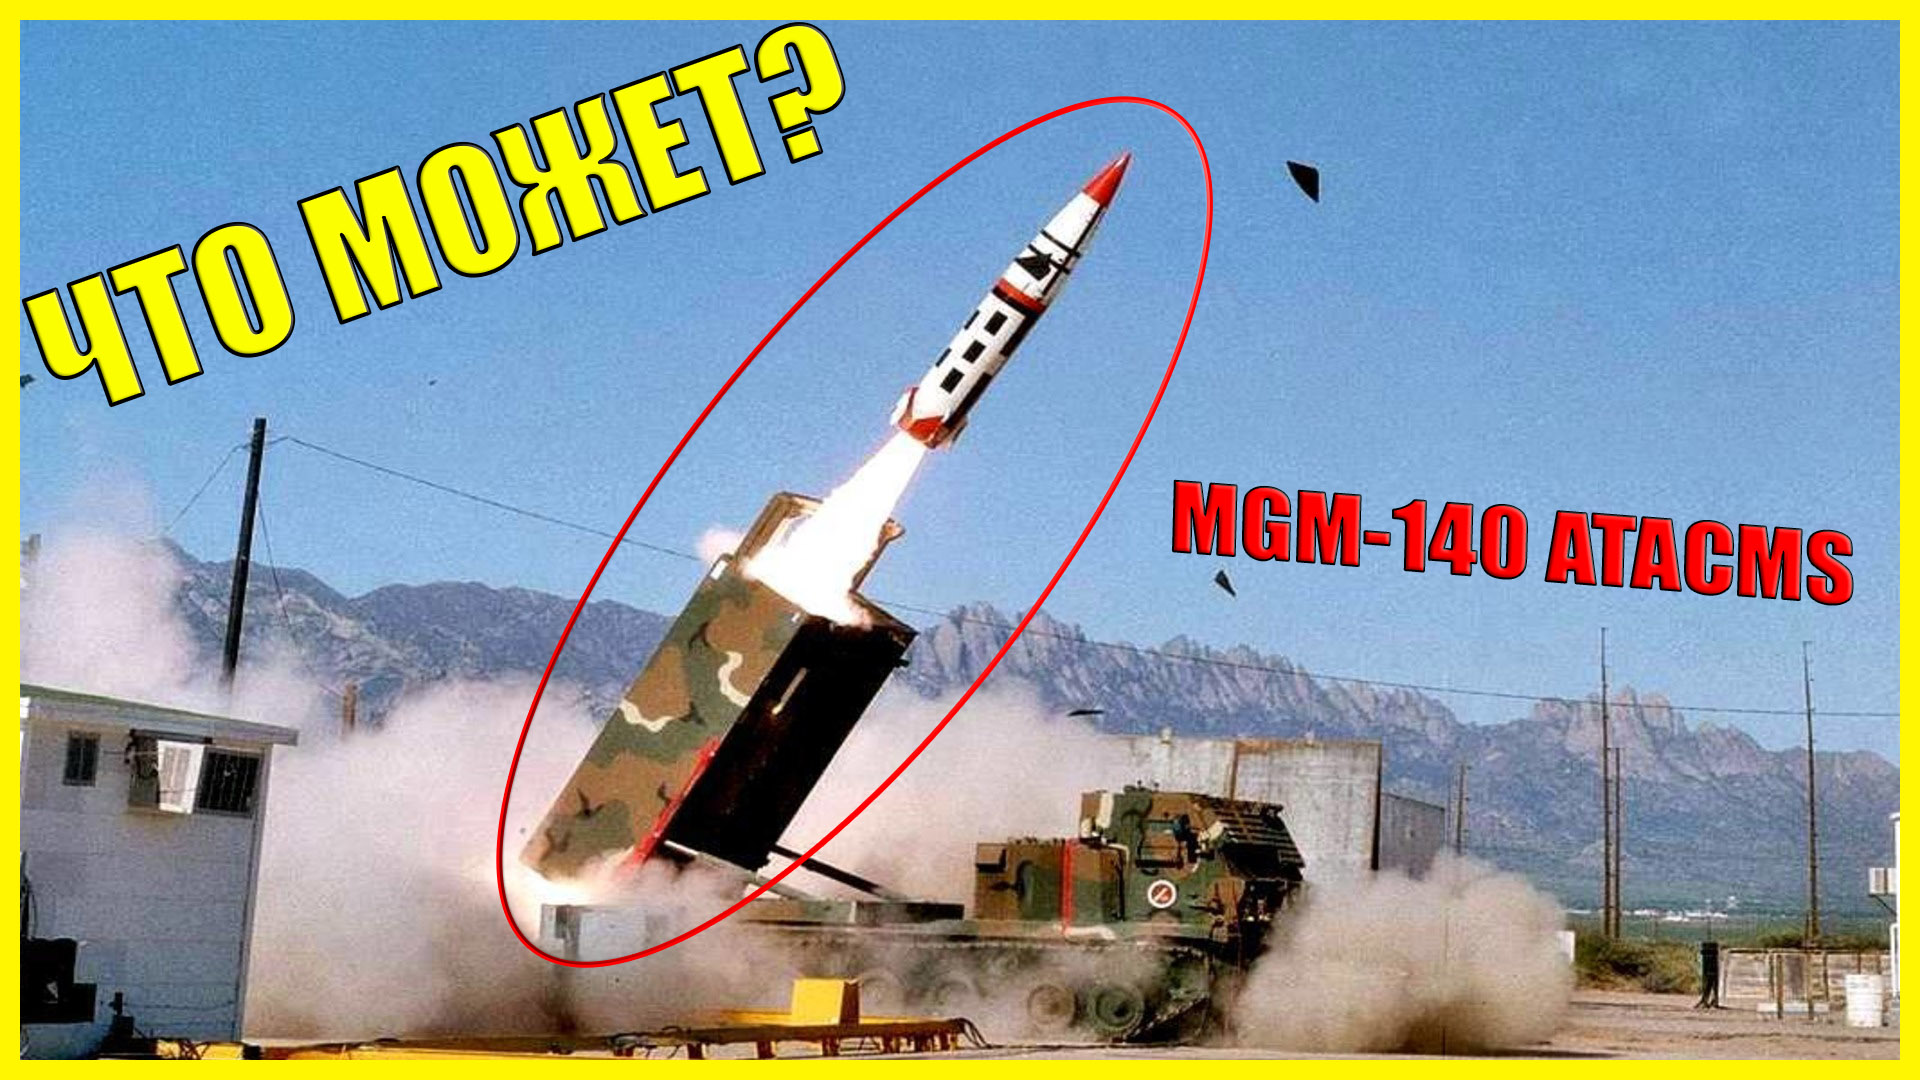 Atacms ракета радиус поражения. MGM-140 atacms. РСЗО MGM-140 atacms. Оперативно-тактические ракеты MGM-140 atacms. MGM 140 atacms ракета характеристики.